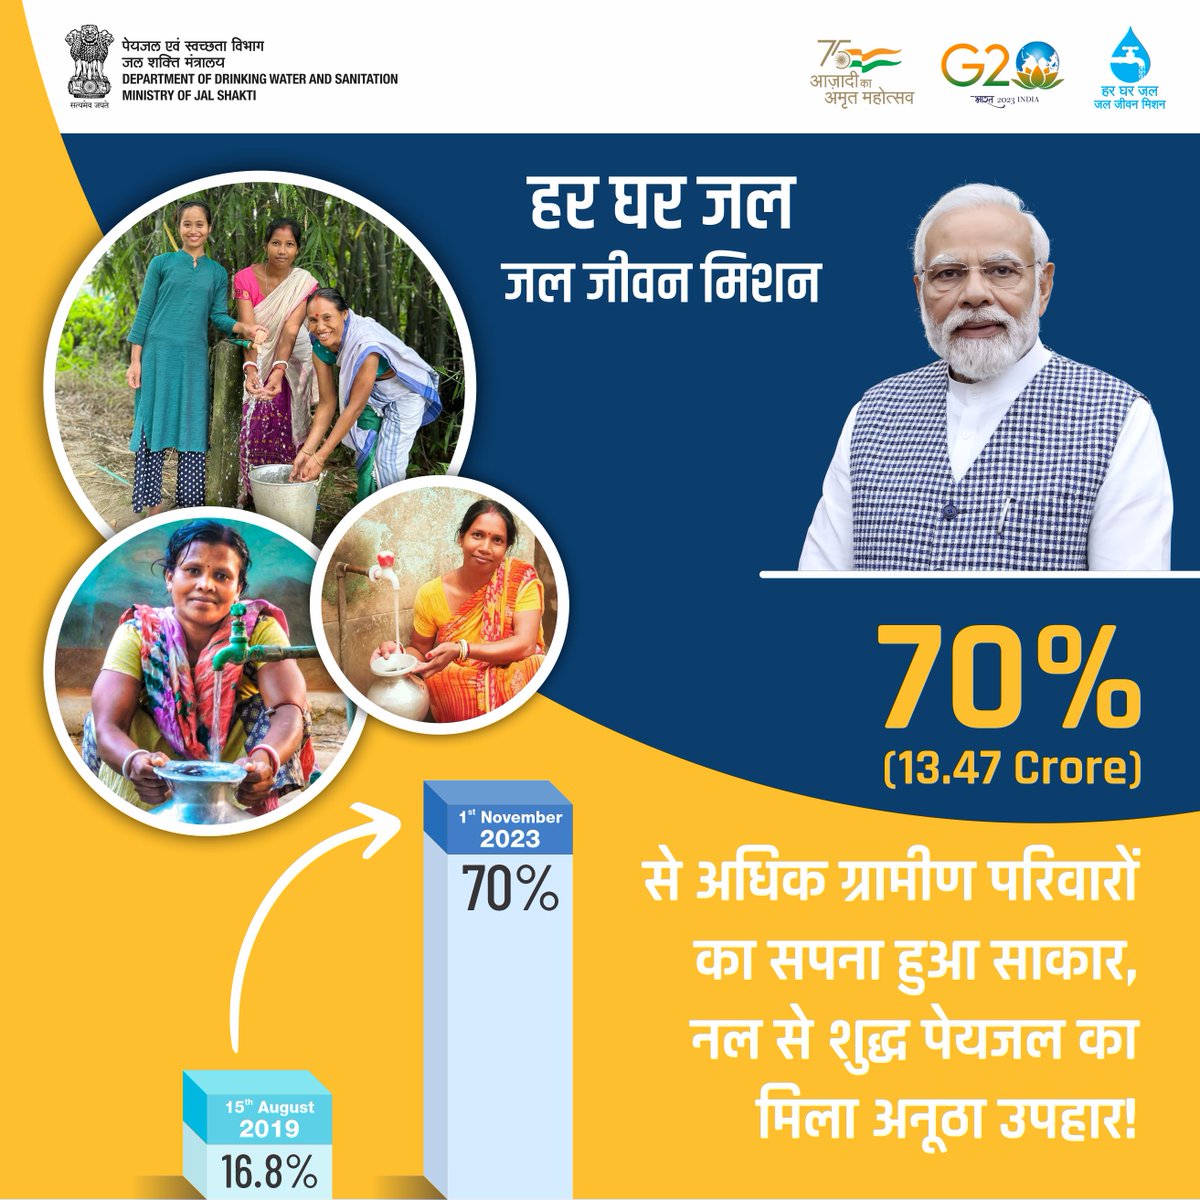 ‘हर घर जल’ के सपने को मिली एक और नई उड़ान। मा. प्रधानमंत्री श्री @narendramodi जी के नेतृत्व में #जलजीवनमिशन ने आज देश के 13.47 करोड़ से अधिक ग्रामीण परिवारों तक नल से स्वच्छ जल पहुंचाने के साथ अपने 70 फीसदी लक्ष्य को हासिल कर लिया है। हार्दिक बधाई। @PMOIndia @jaljeevan_